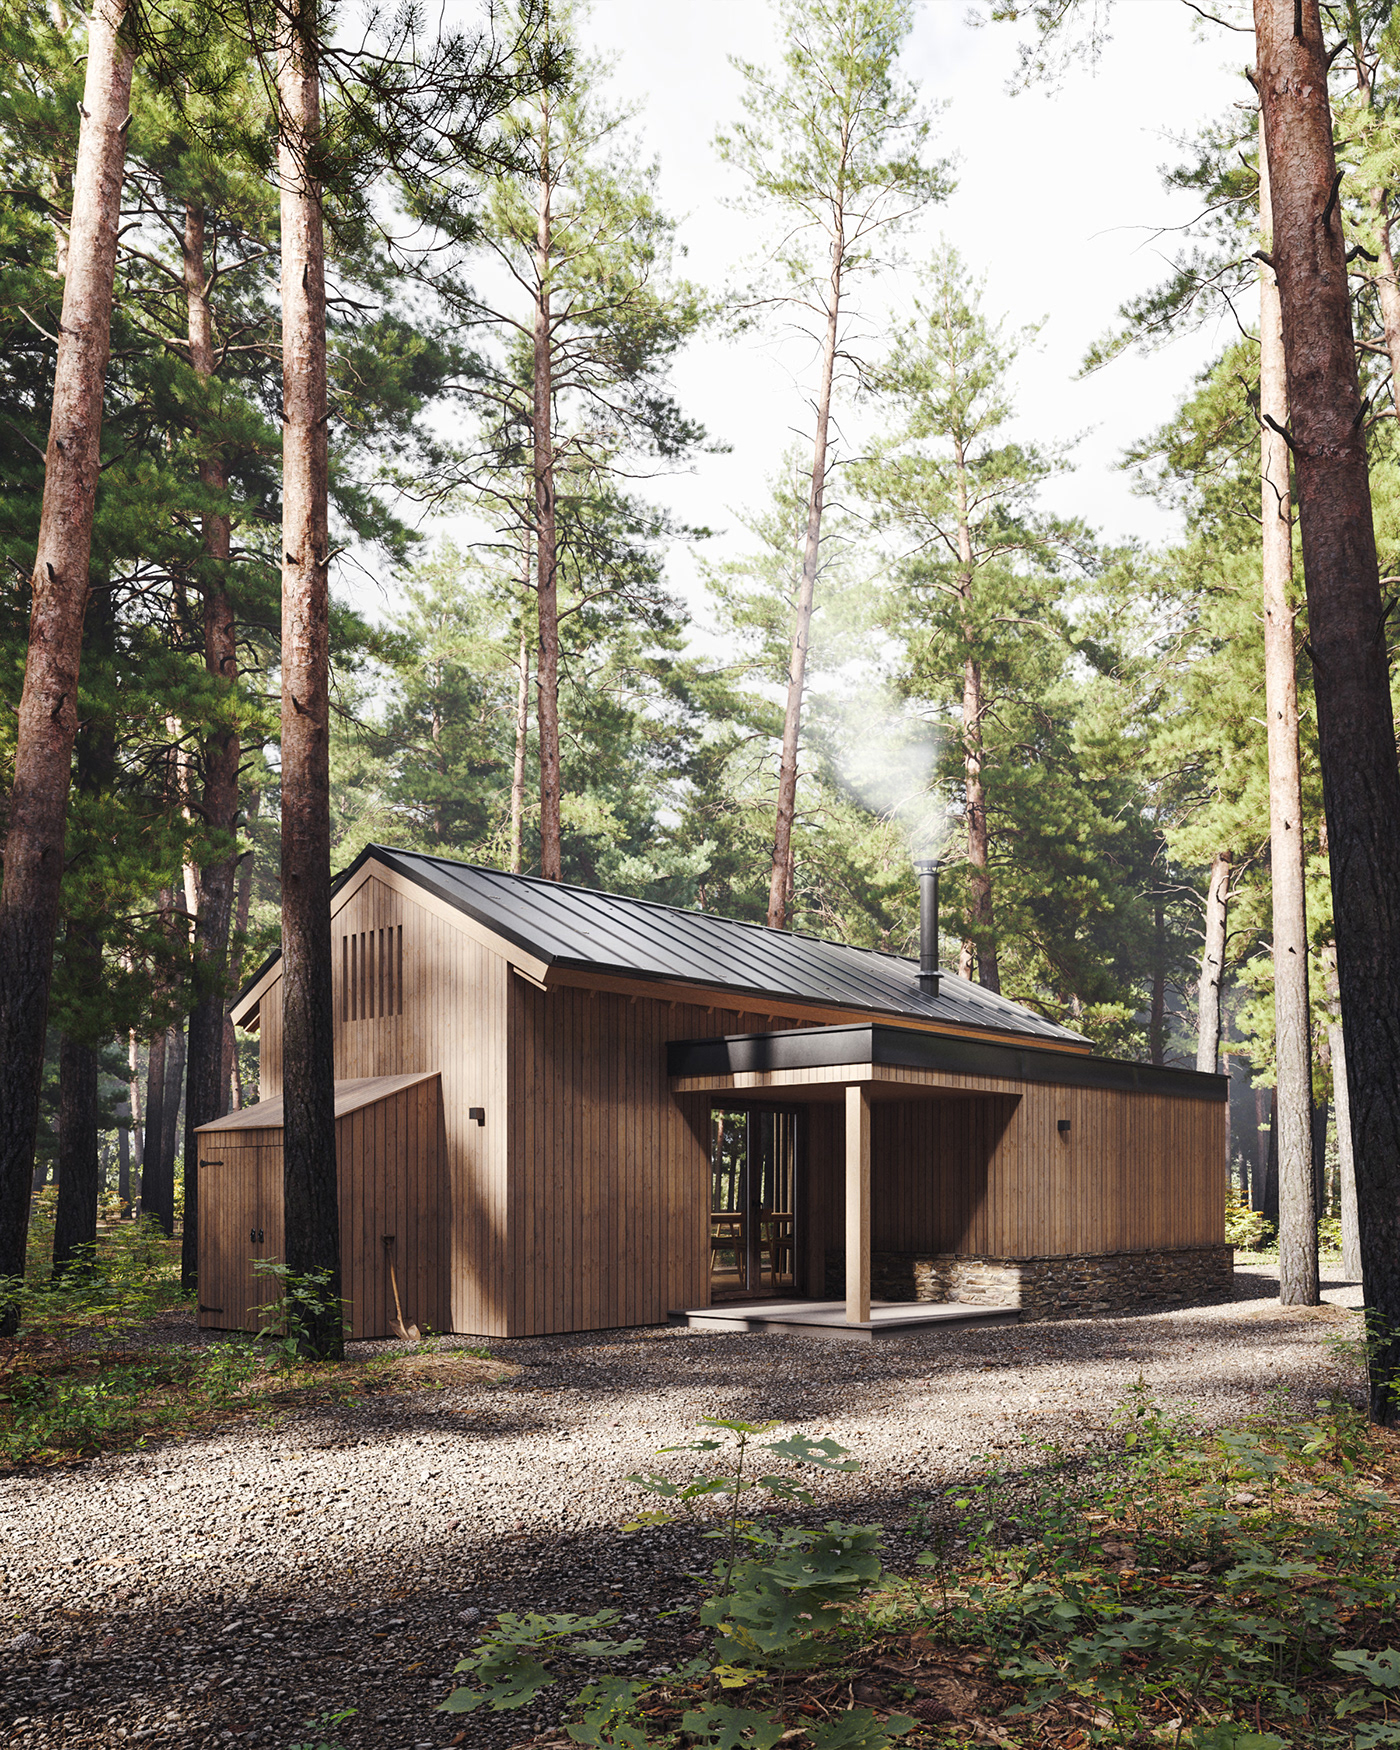 3ds max architecture cabin corona render  corona renderer forest Interior Landscape CGI visualization